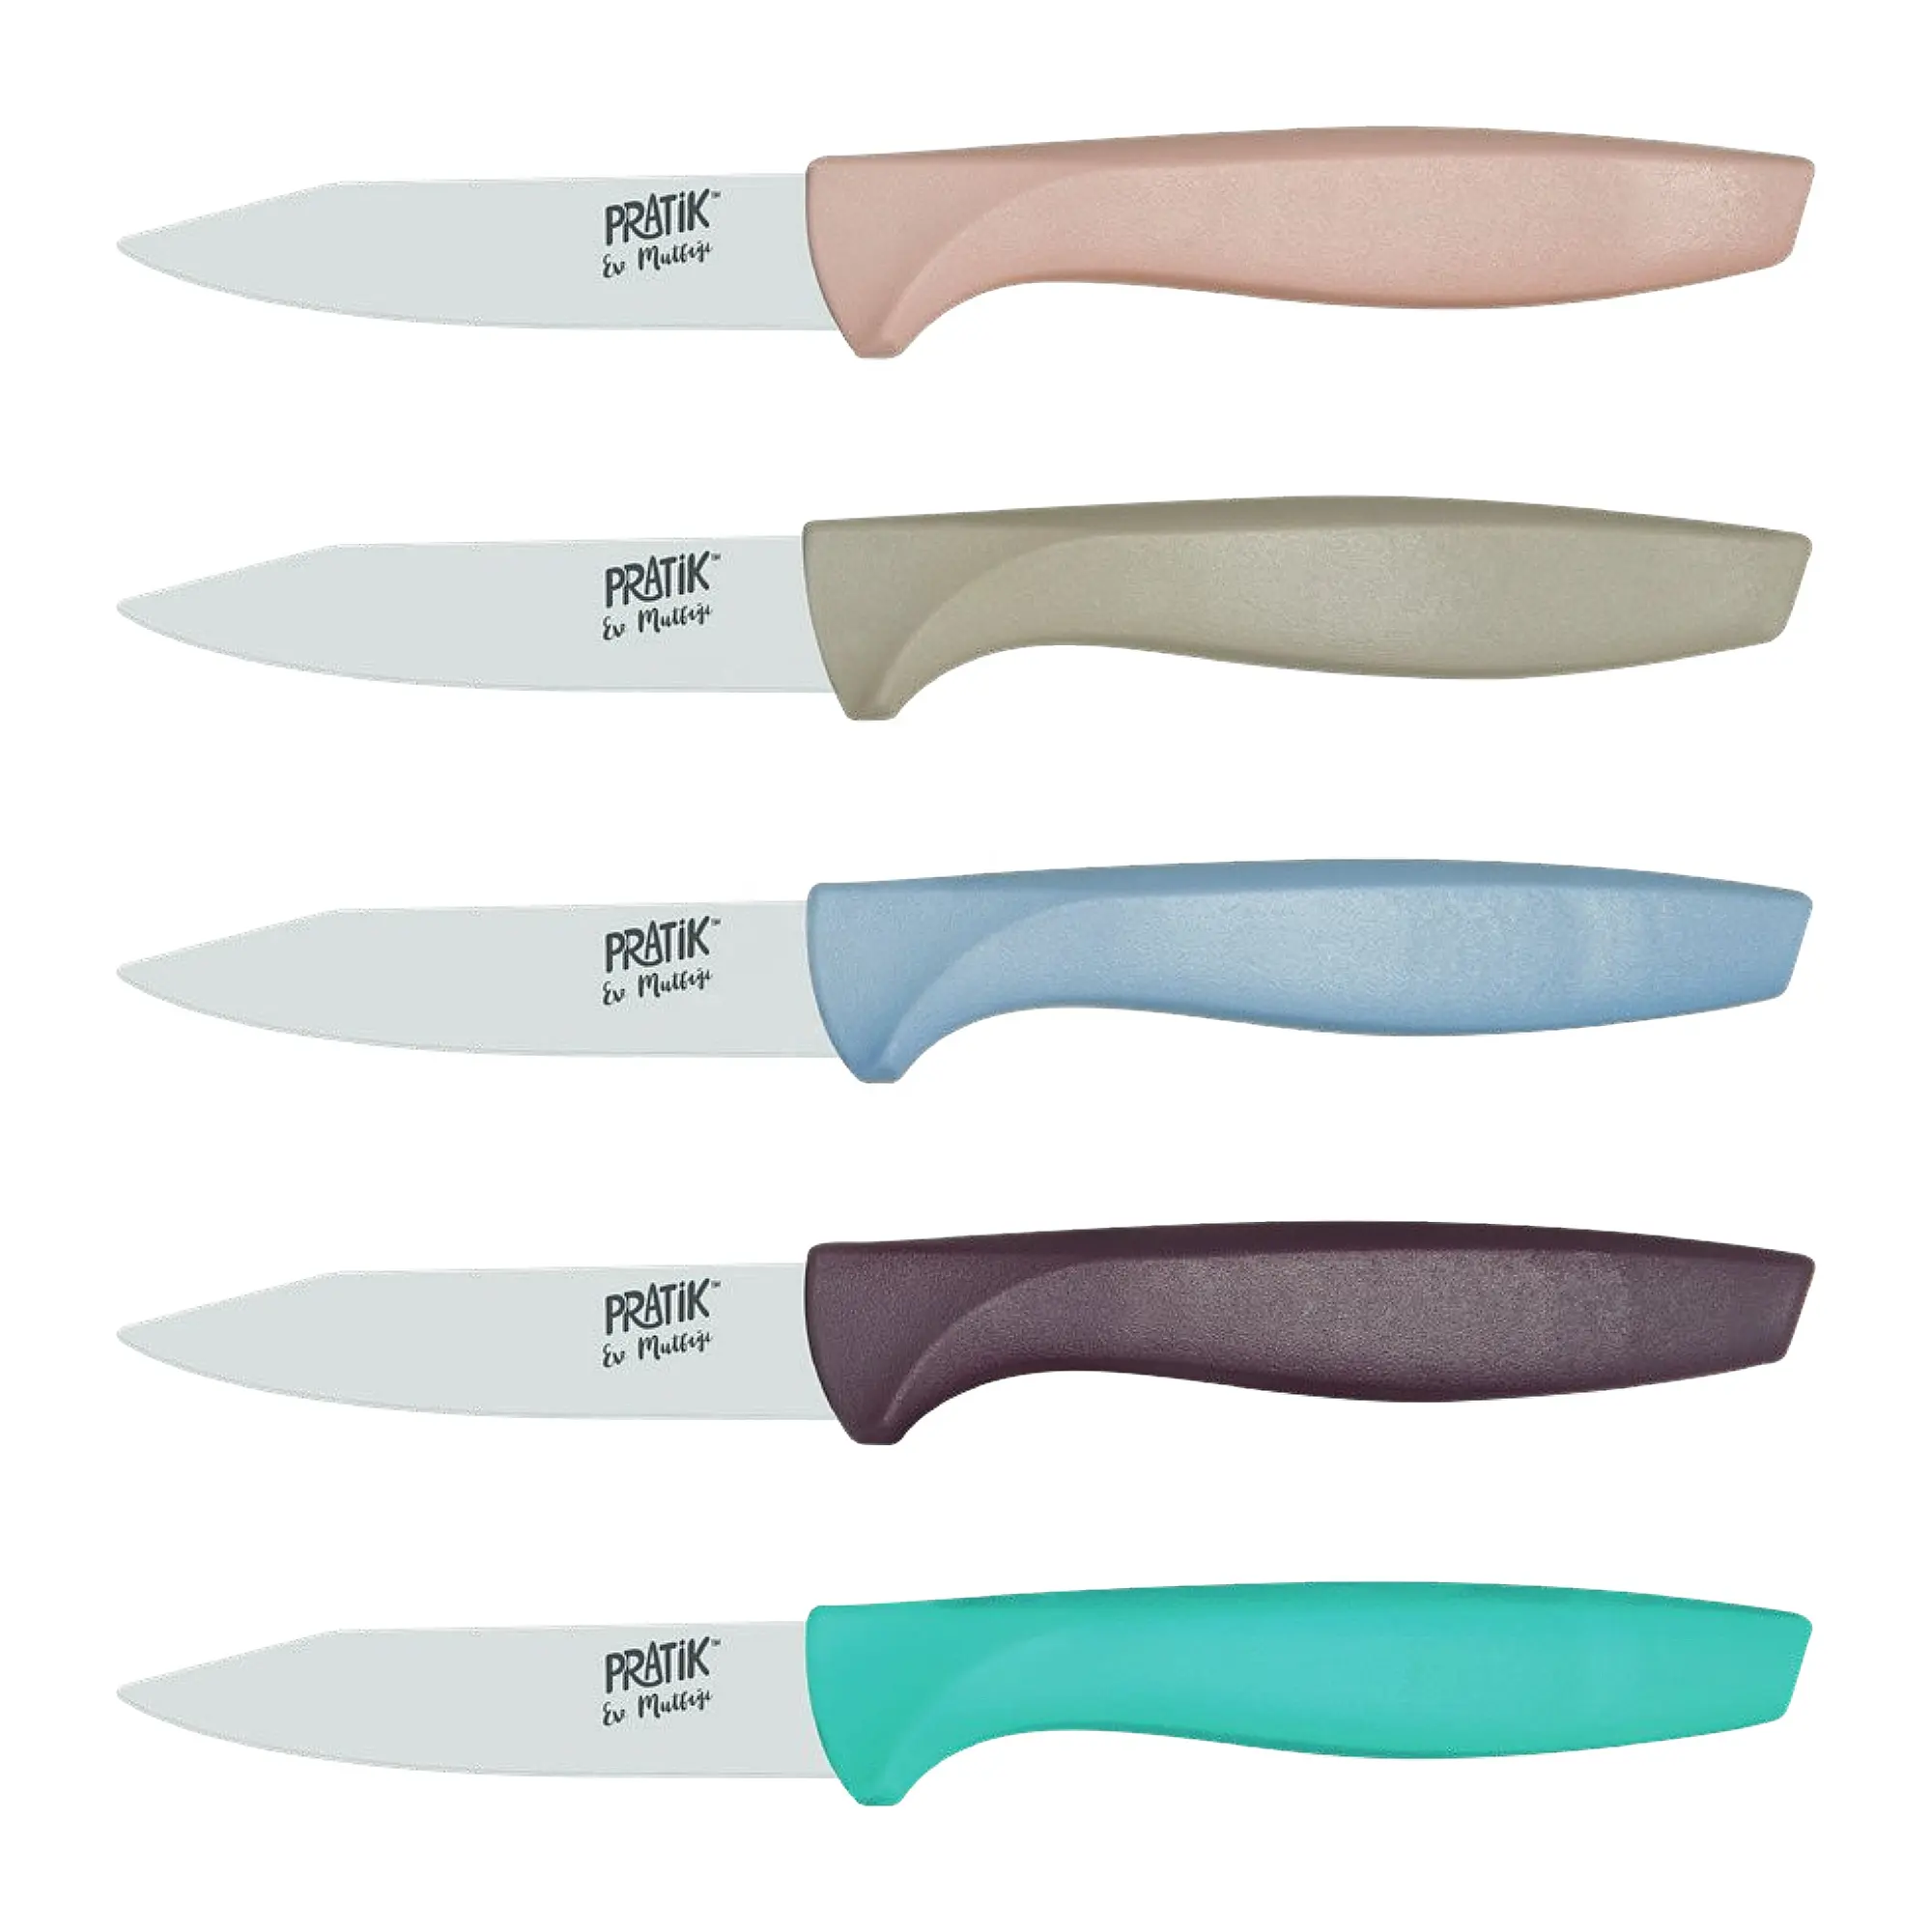 Pratik ev soyma bıçağı 9 cm mızrak noktası-paslanmaz çelik soyma bıçağı-toptan meyve sebze soyma bıçağı-43211